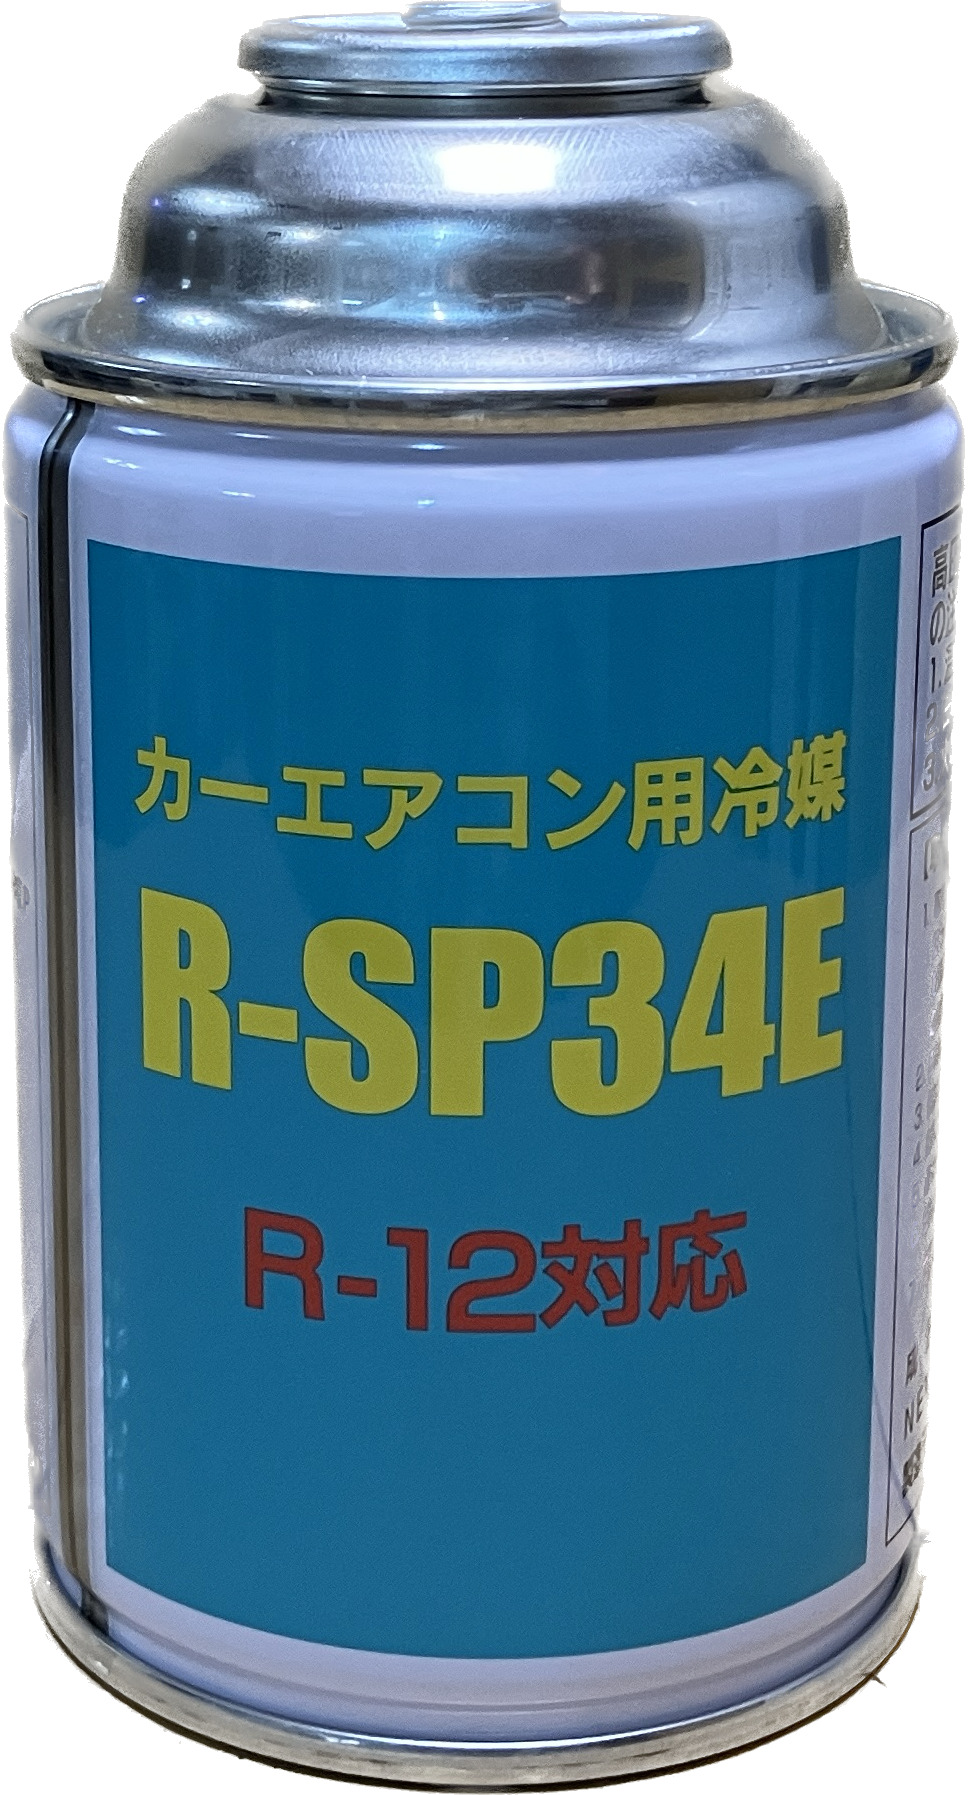 R-12タイプ R-SP34Eカーエアコン用冷媒200g　10缶セット　送料無料！